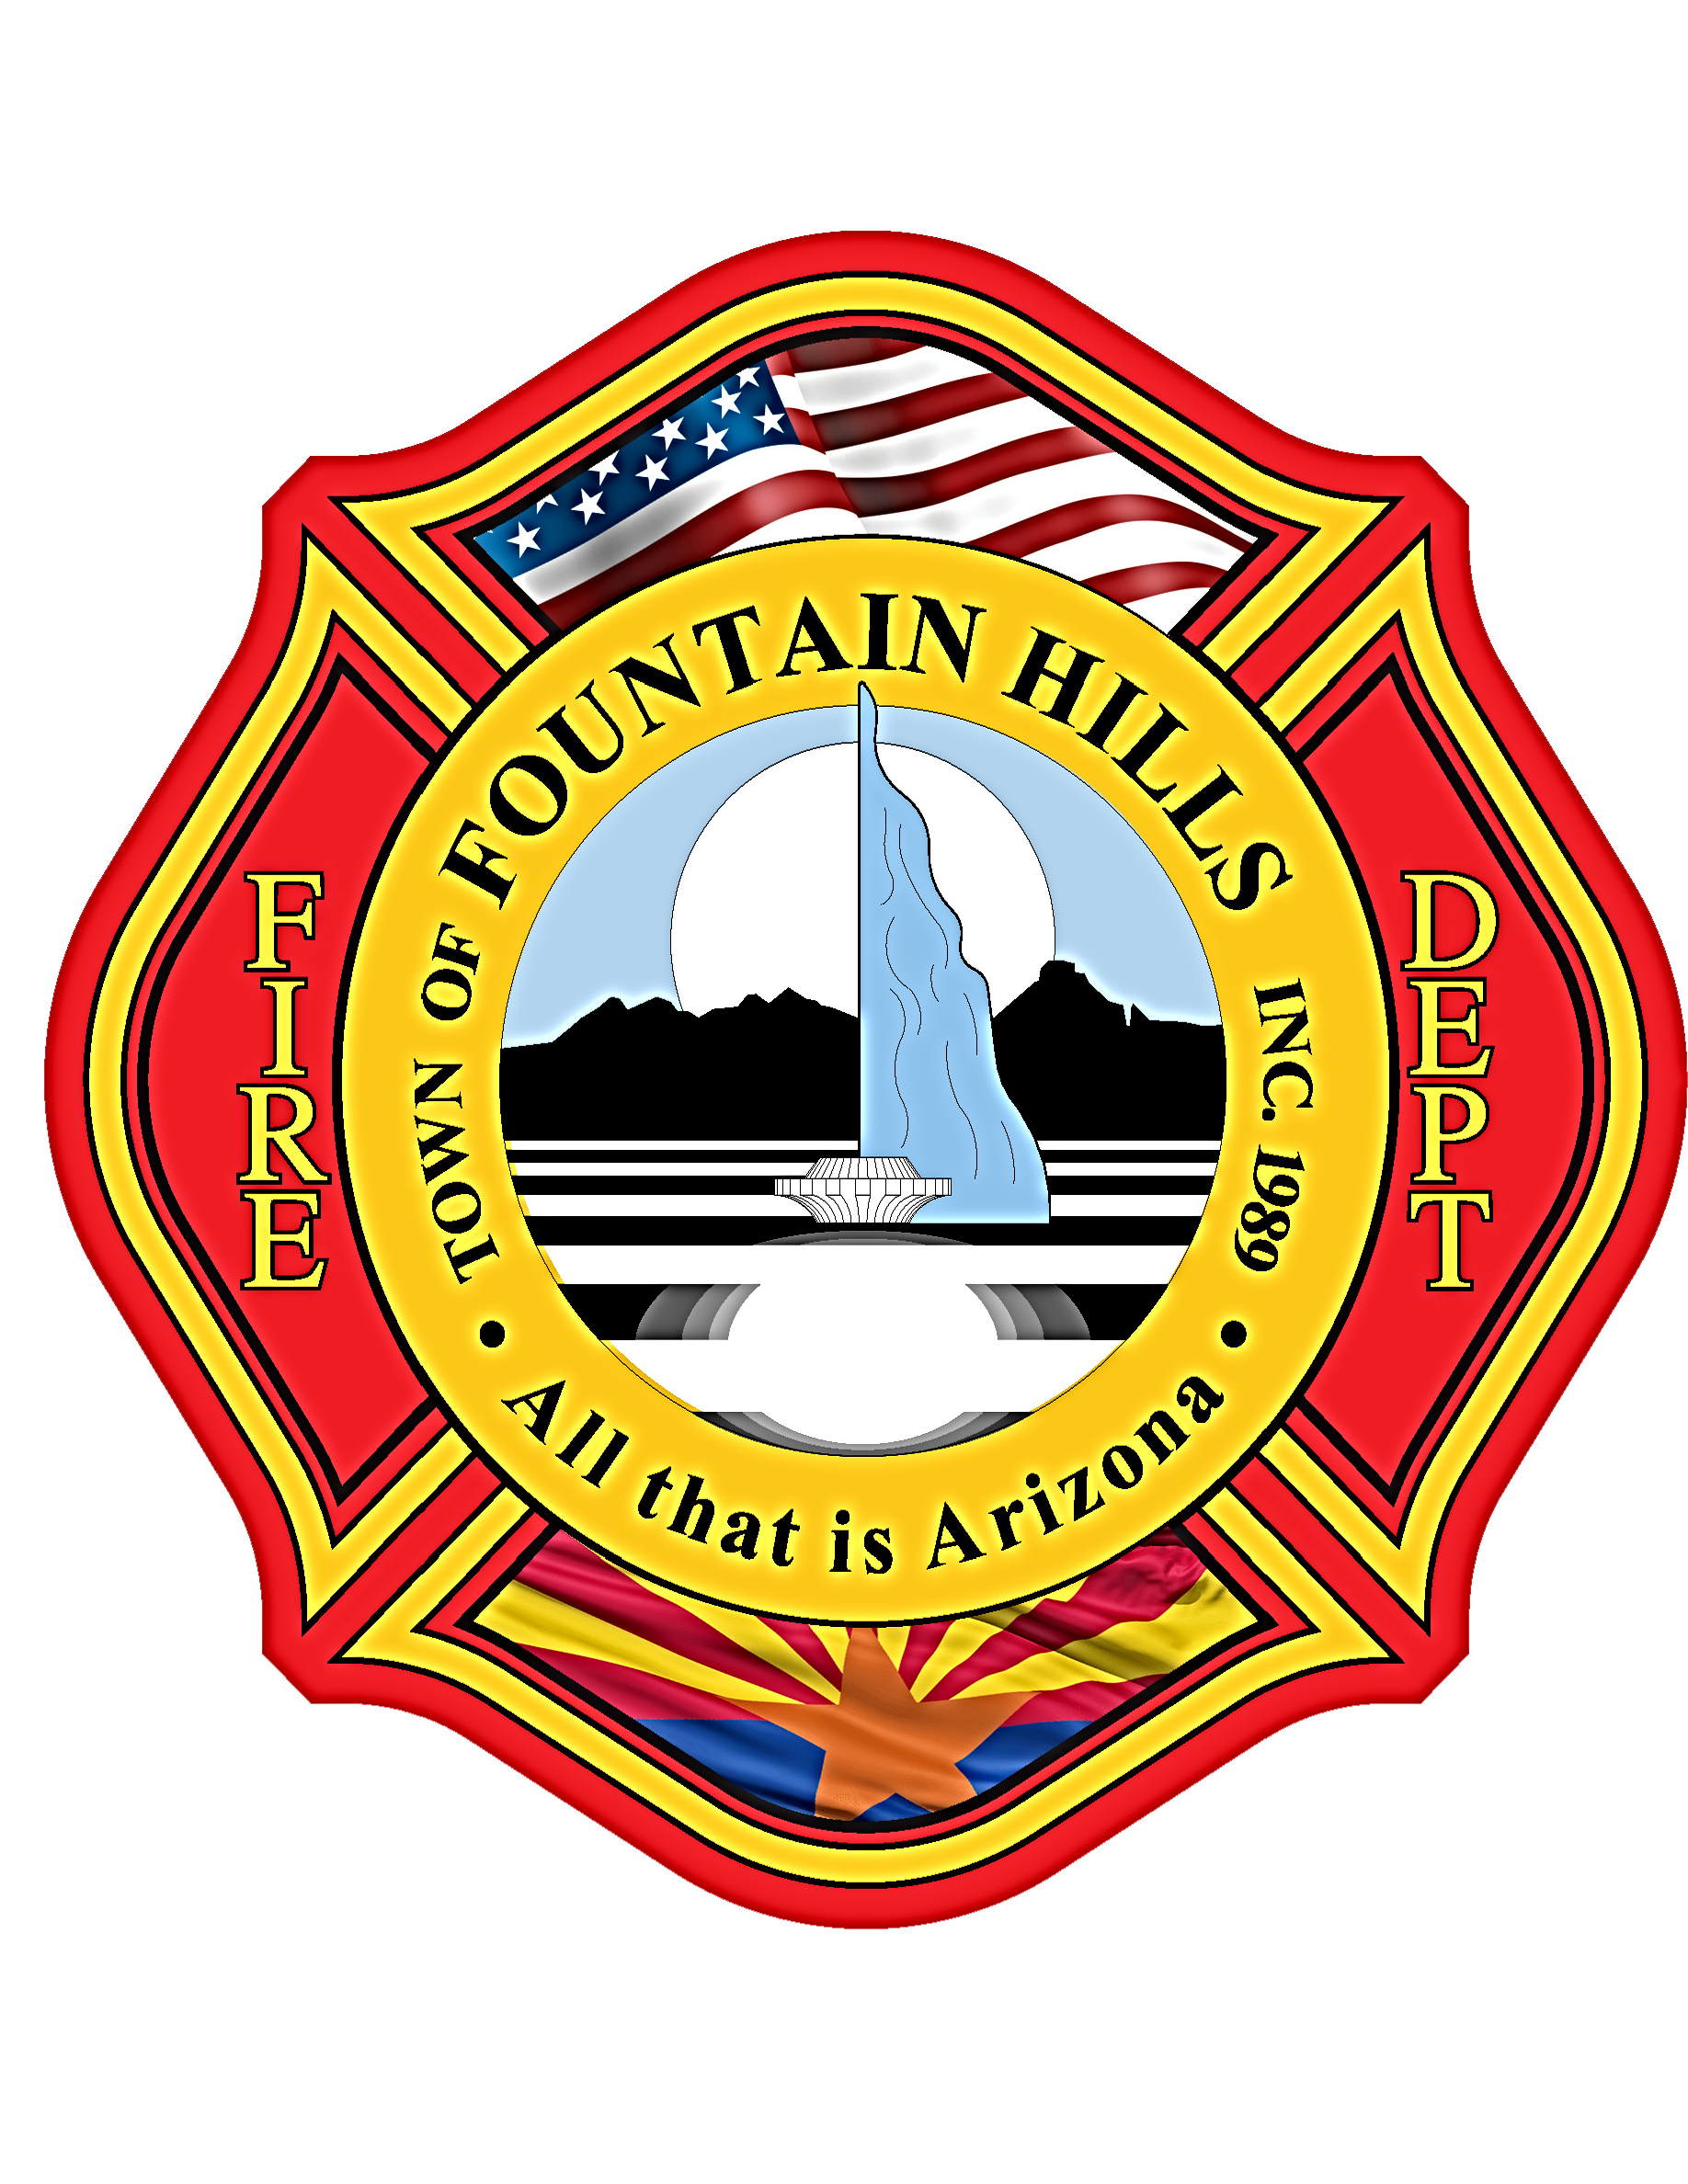 Fountain Hills Fire Department